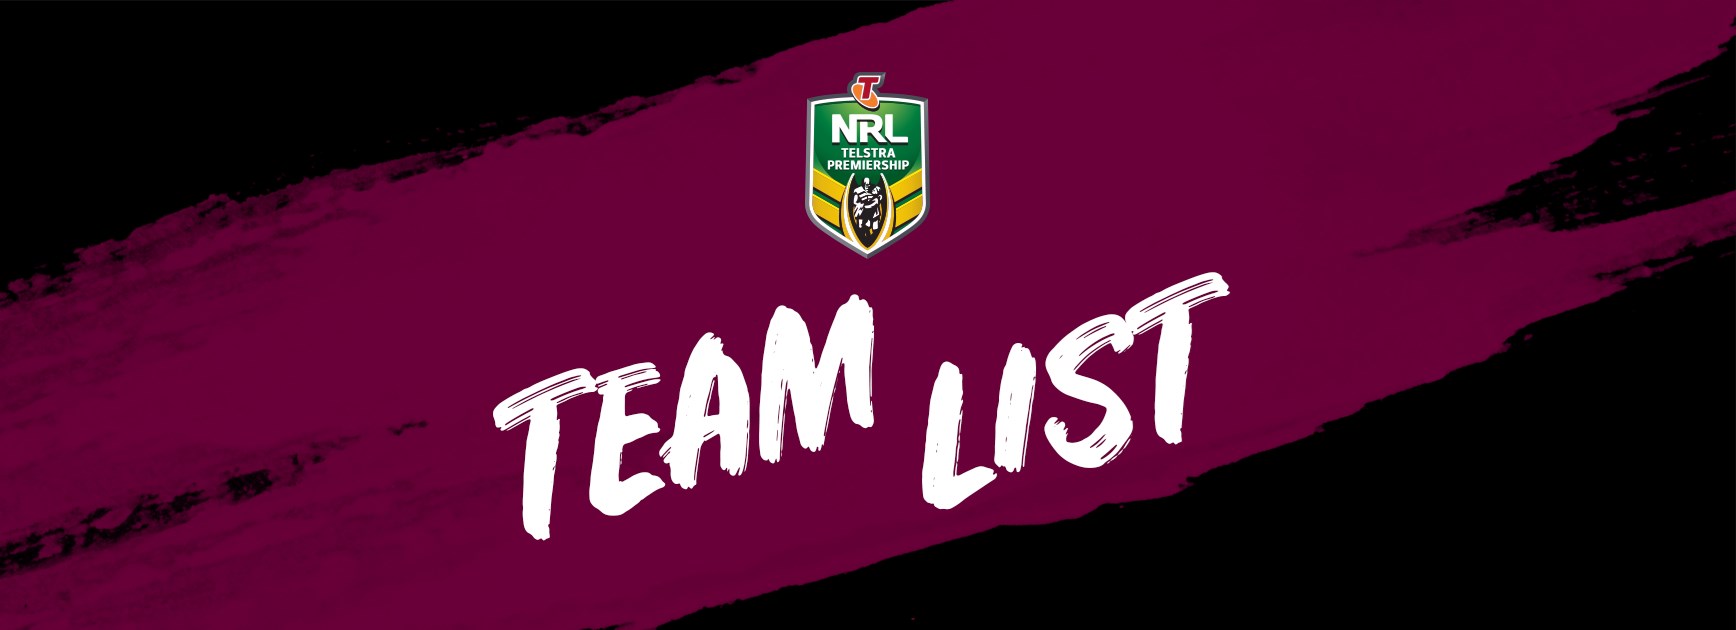 NRL Team List - Round 9